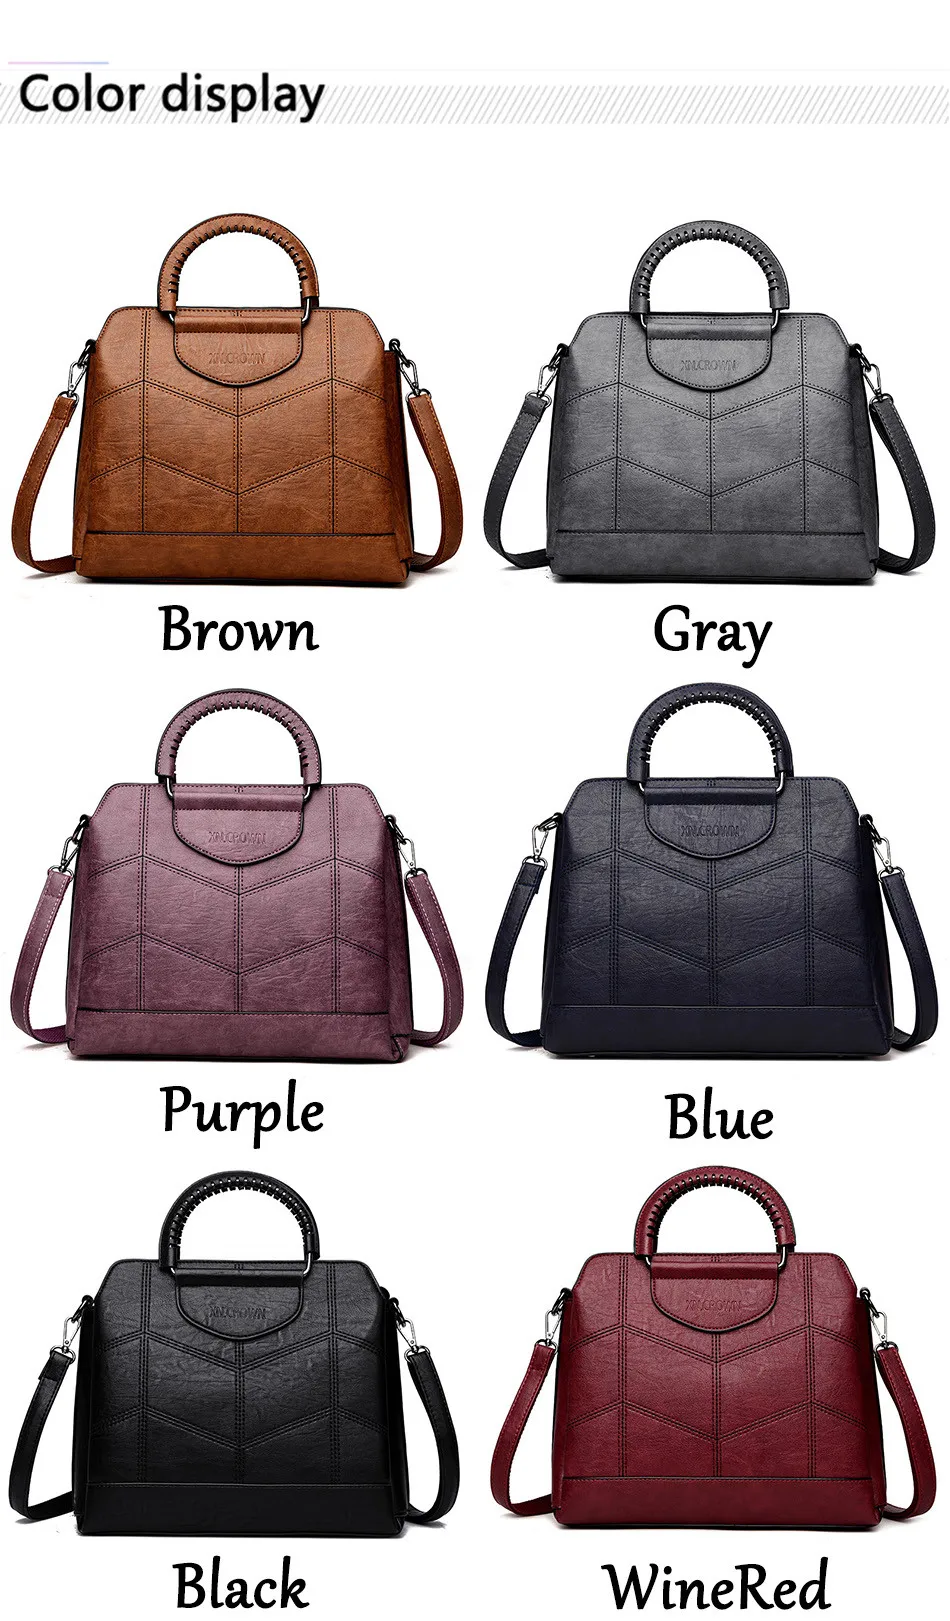 Новая сумка-тоут для женщин сумка через плечо Высокая емкость роскошные женские брендовые сумки дизайнерские сумки через плечо Sac основной